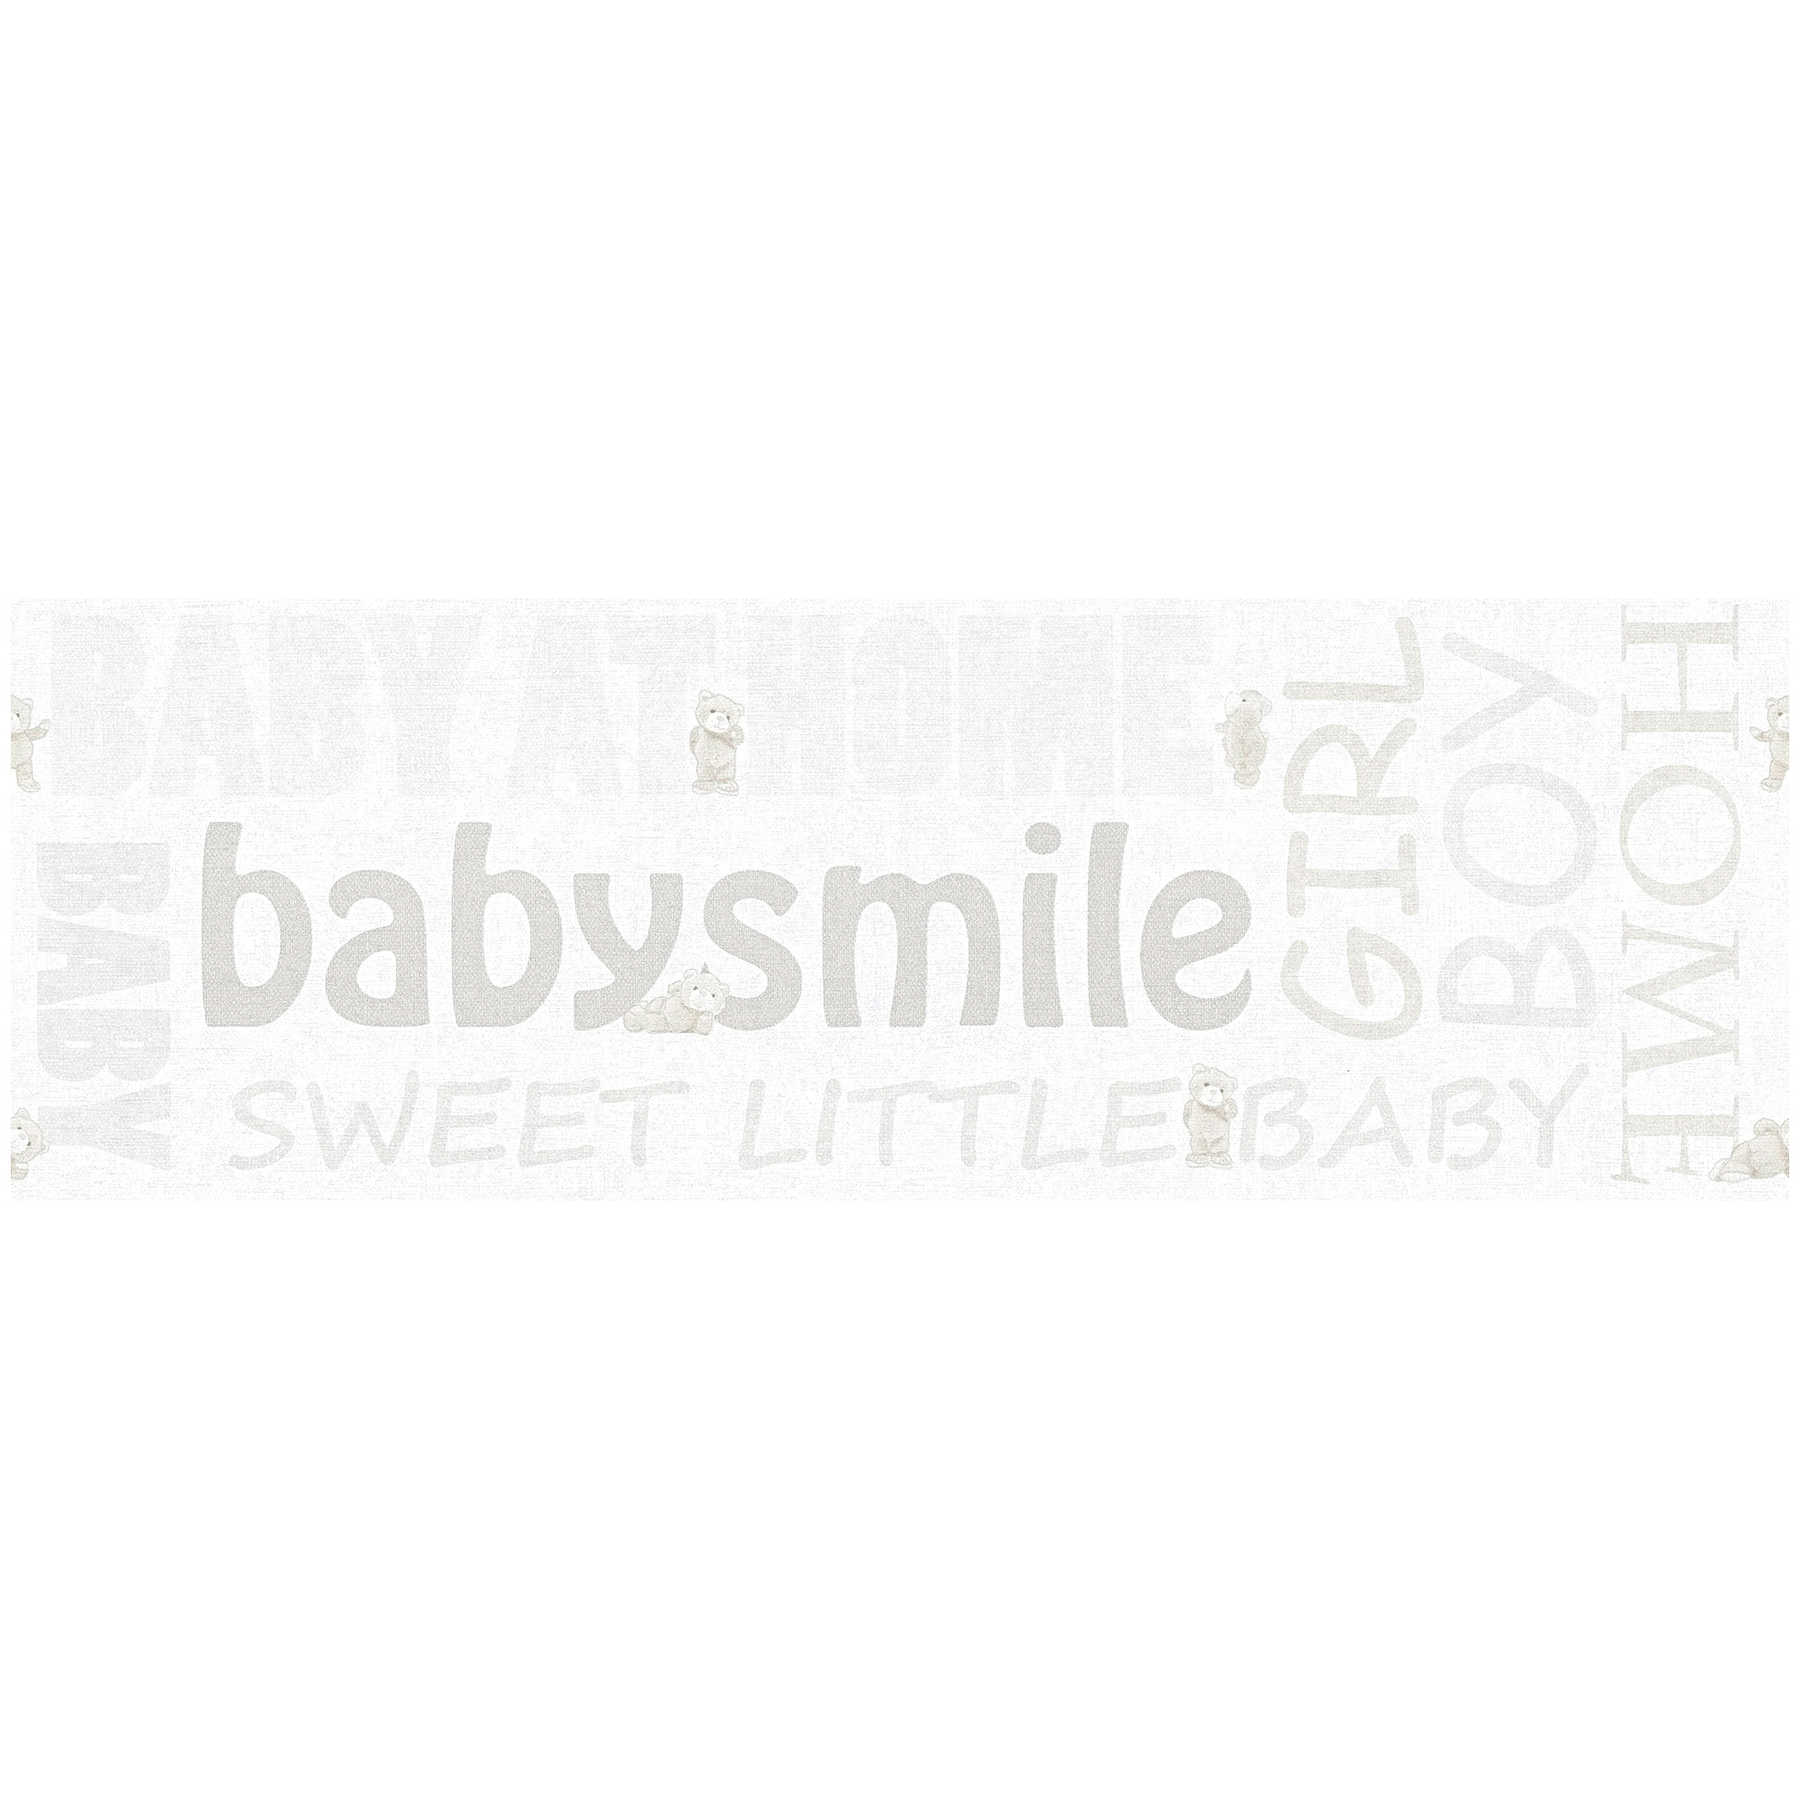 Kinderzimmerborte Baby Smile mit Metallic Effekt – Weiß
